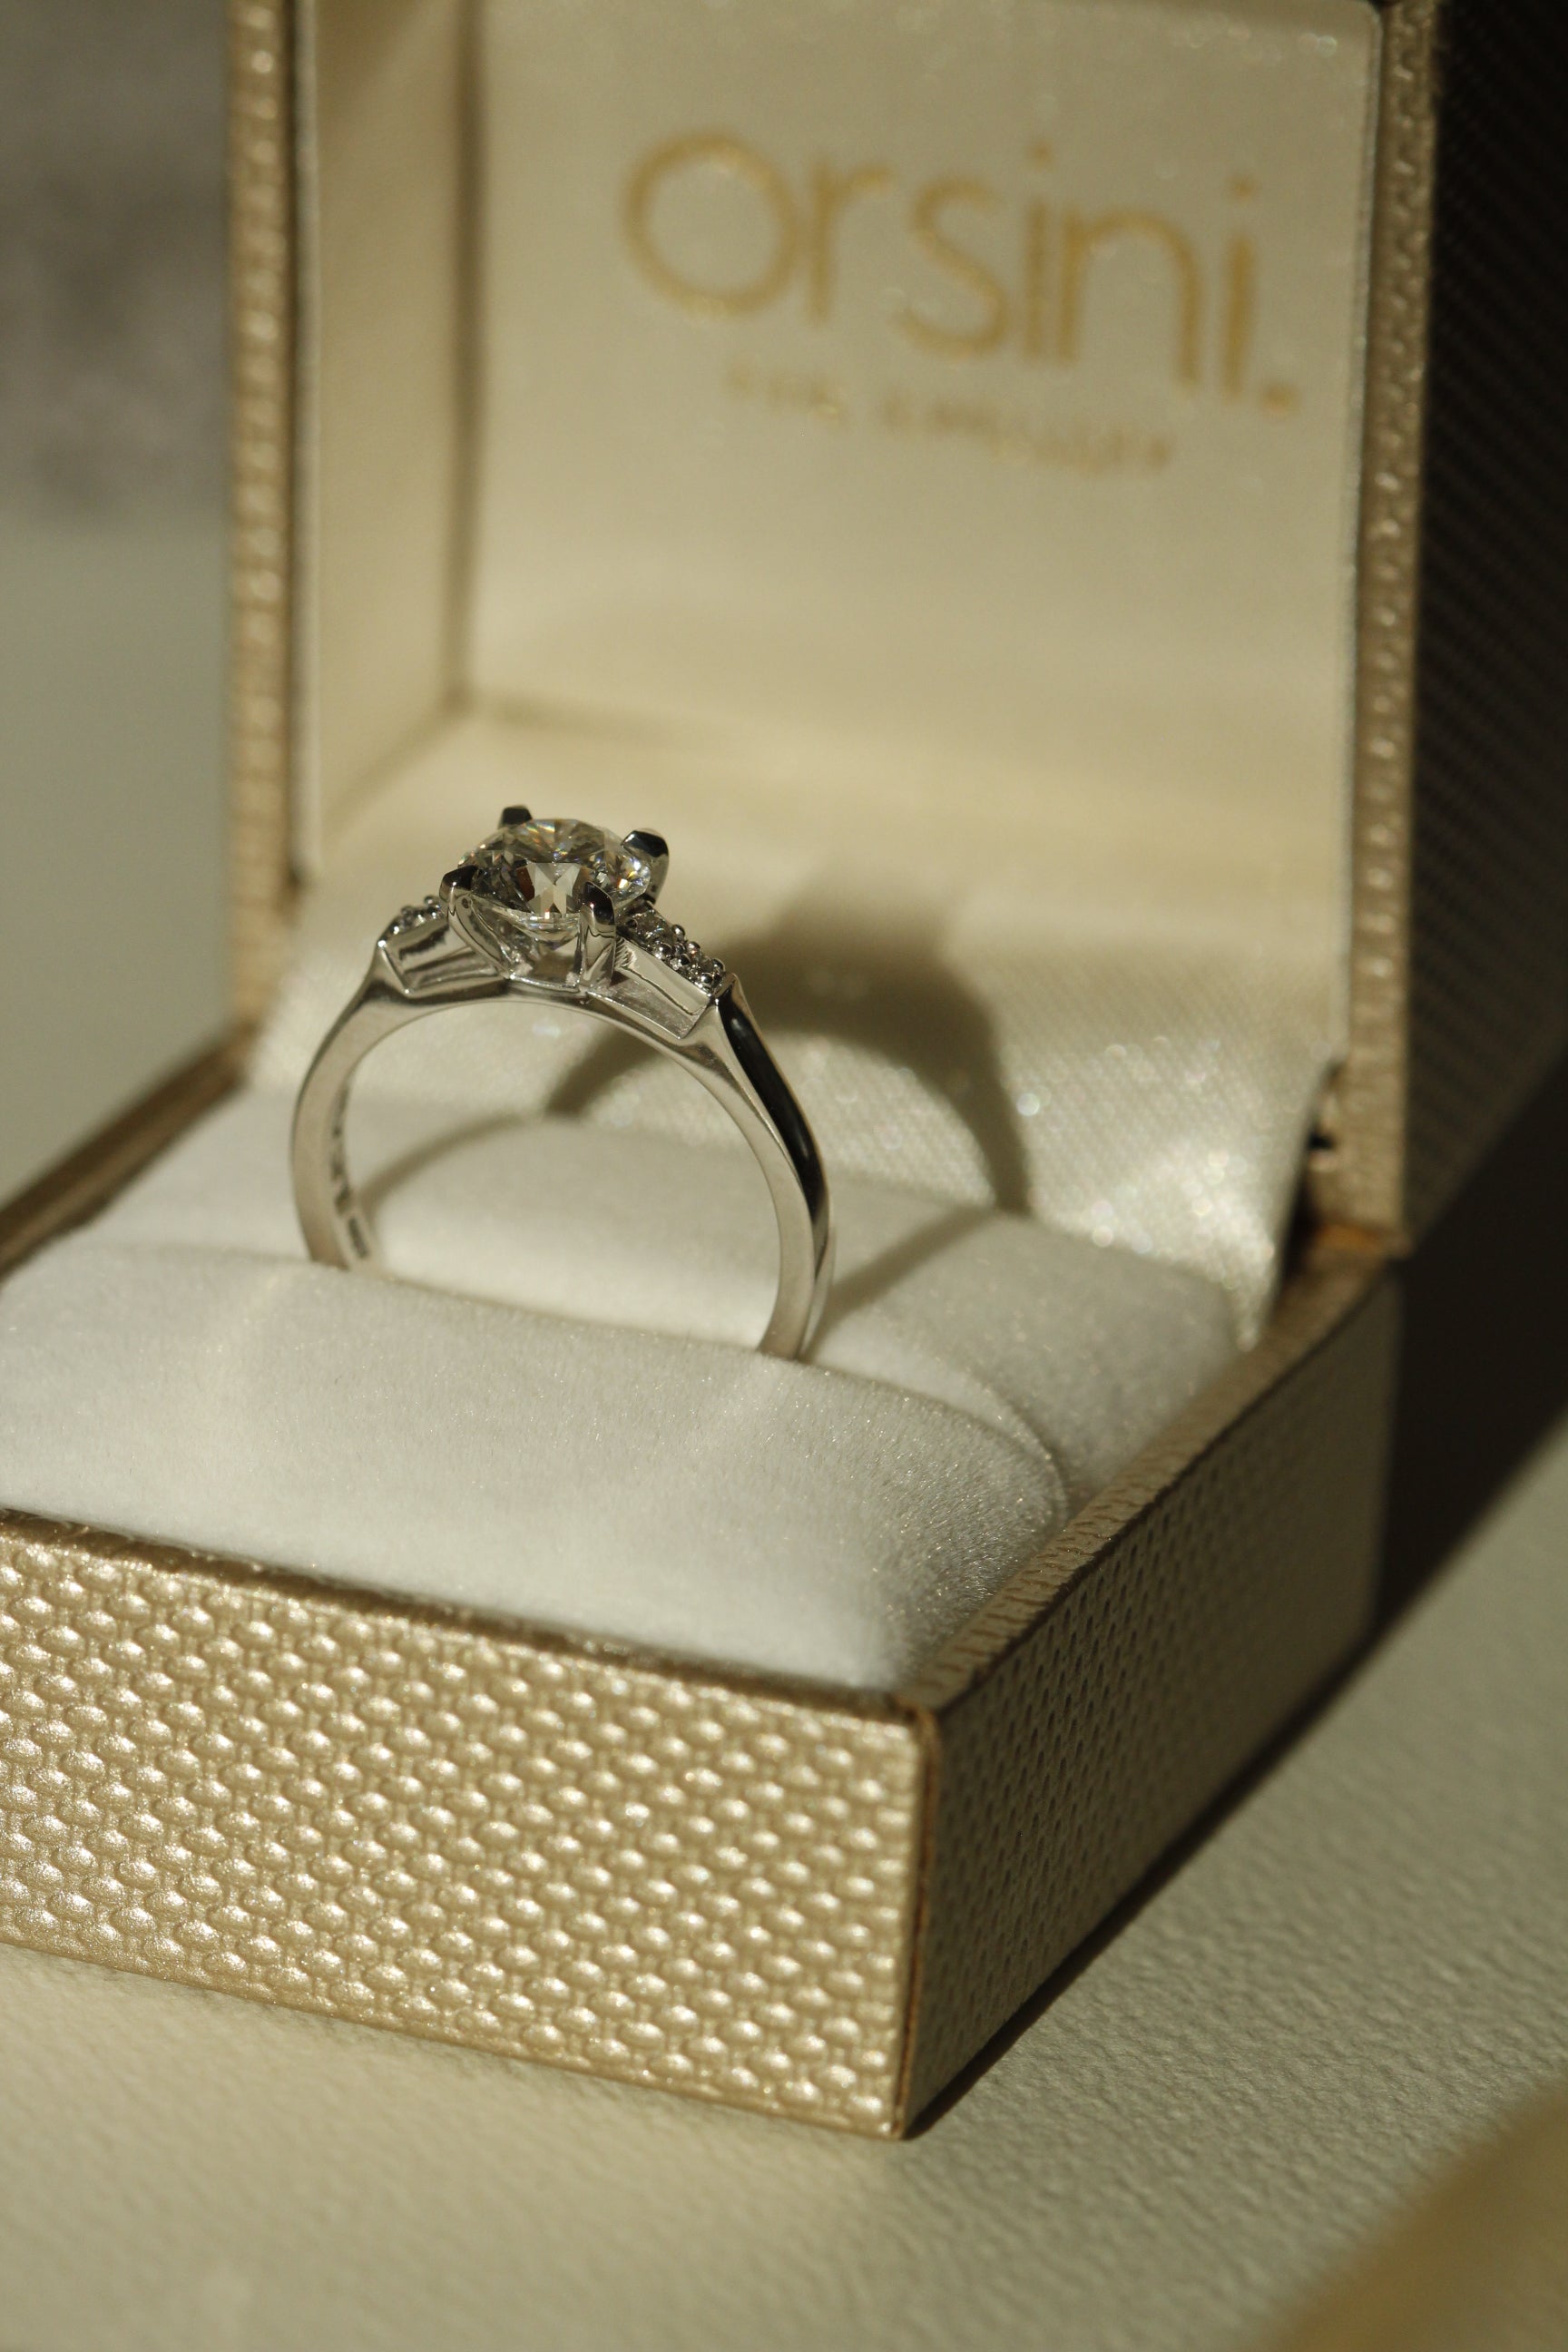 Diamond Engagement Ring in Platinum in Engagement Ring Box Galvani Design